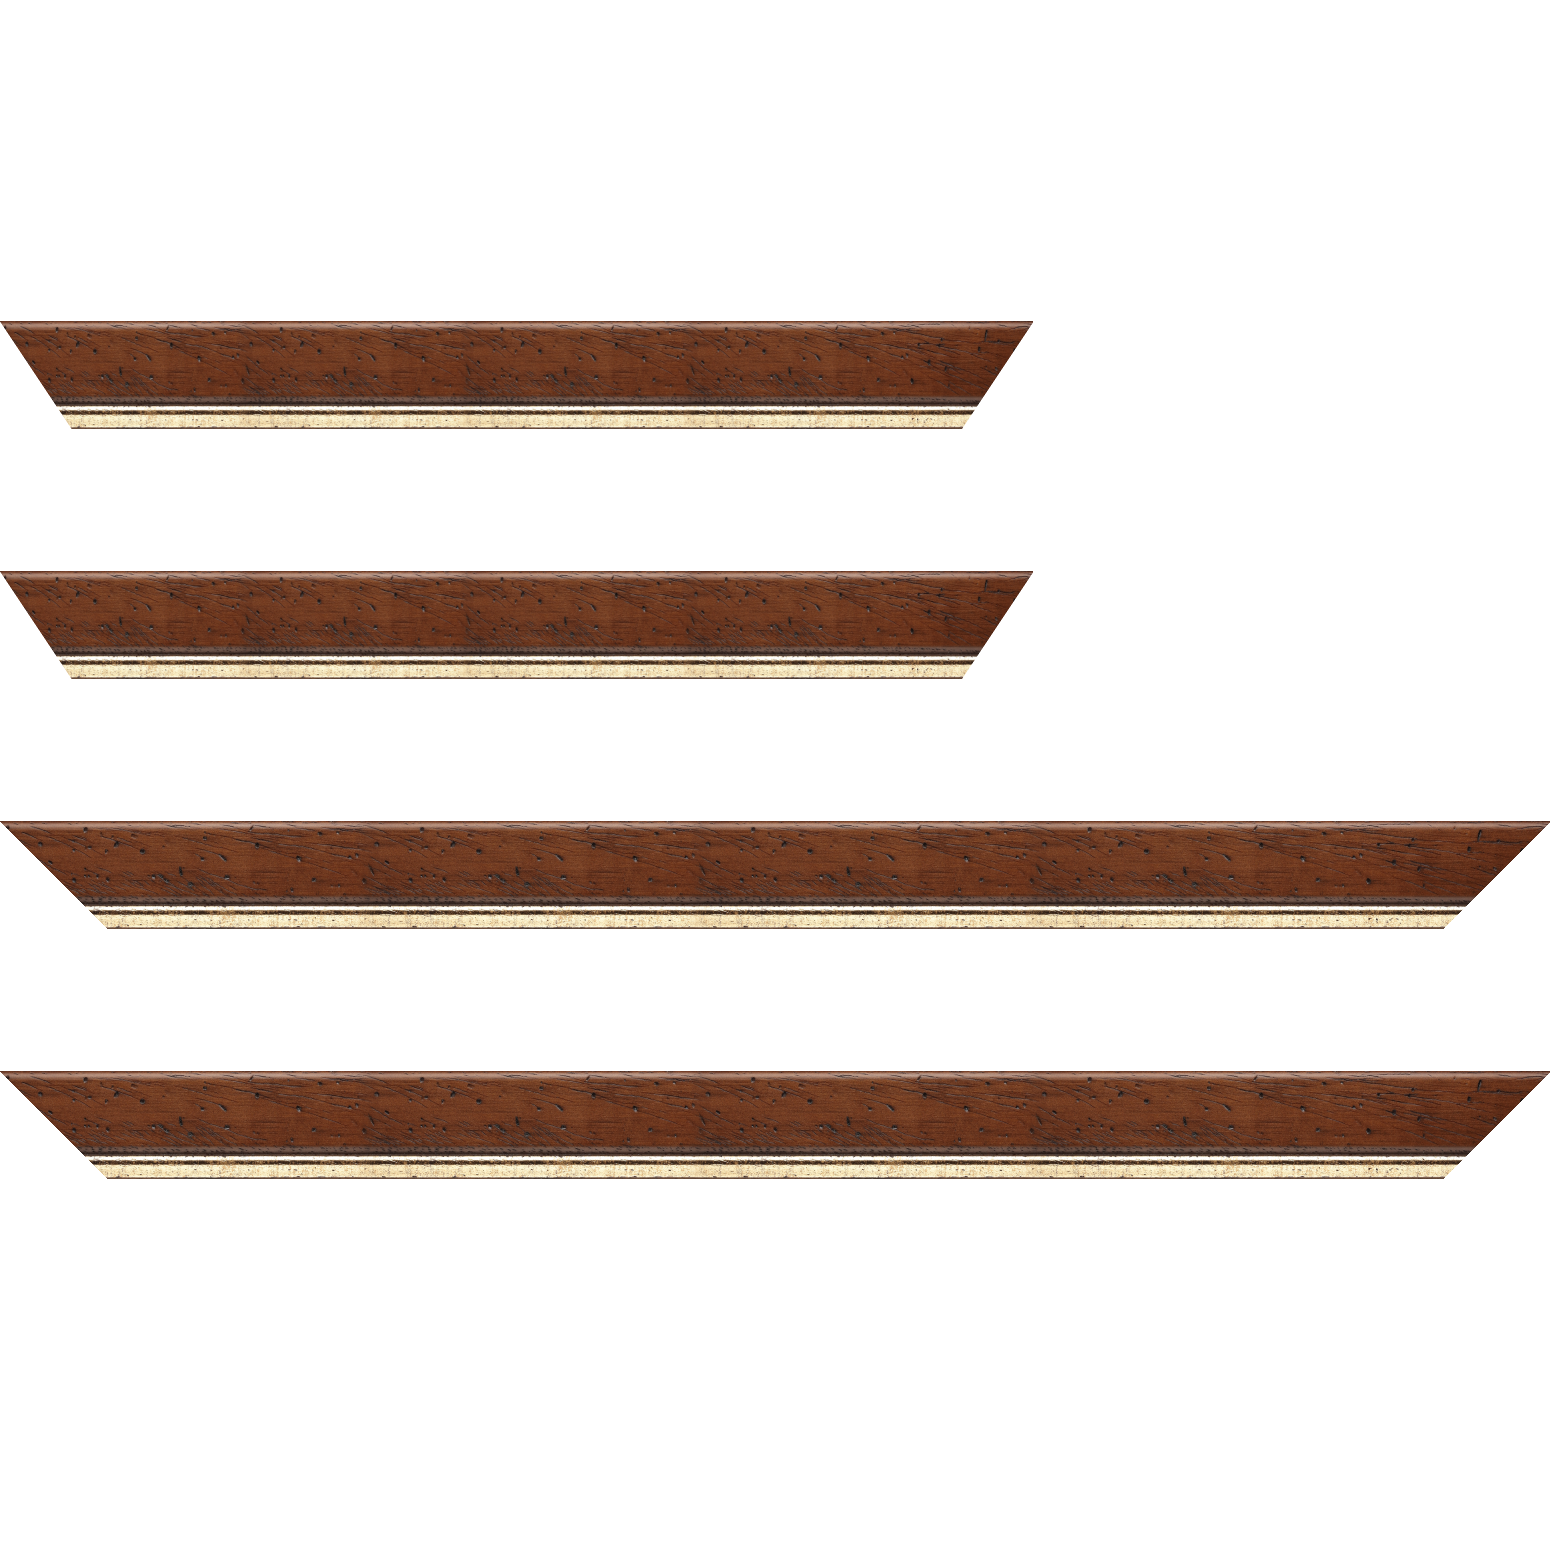 Baguette bois profil arrondi largeur 3.5cm marron satiné classique filet or - 40x60